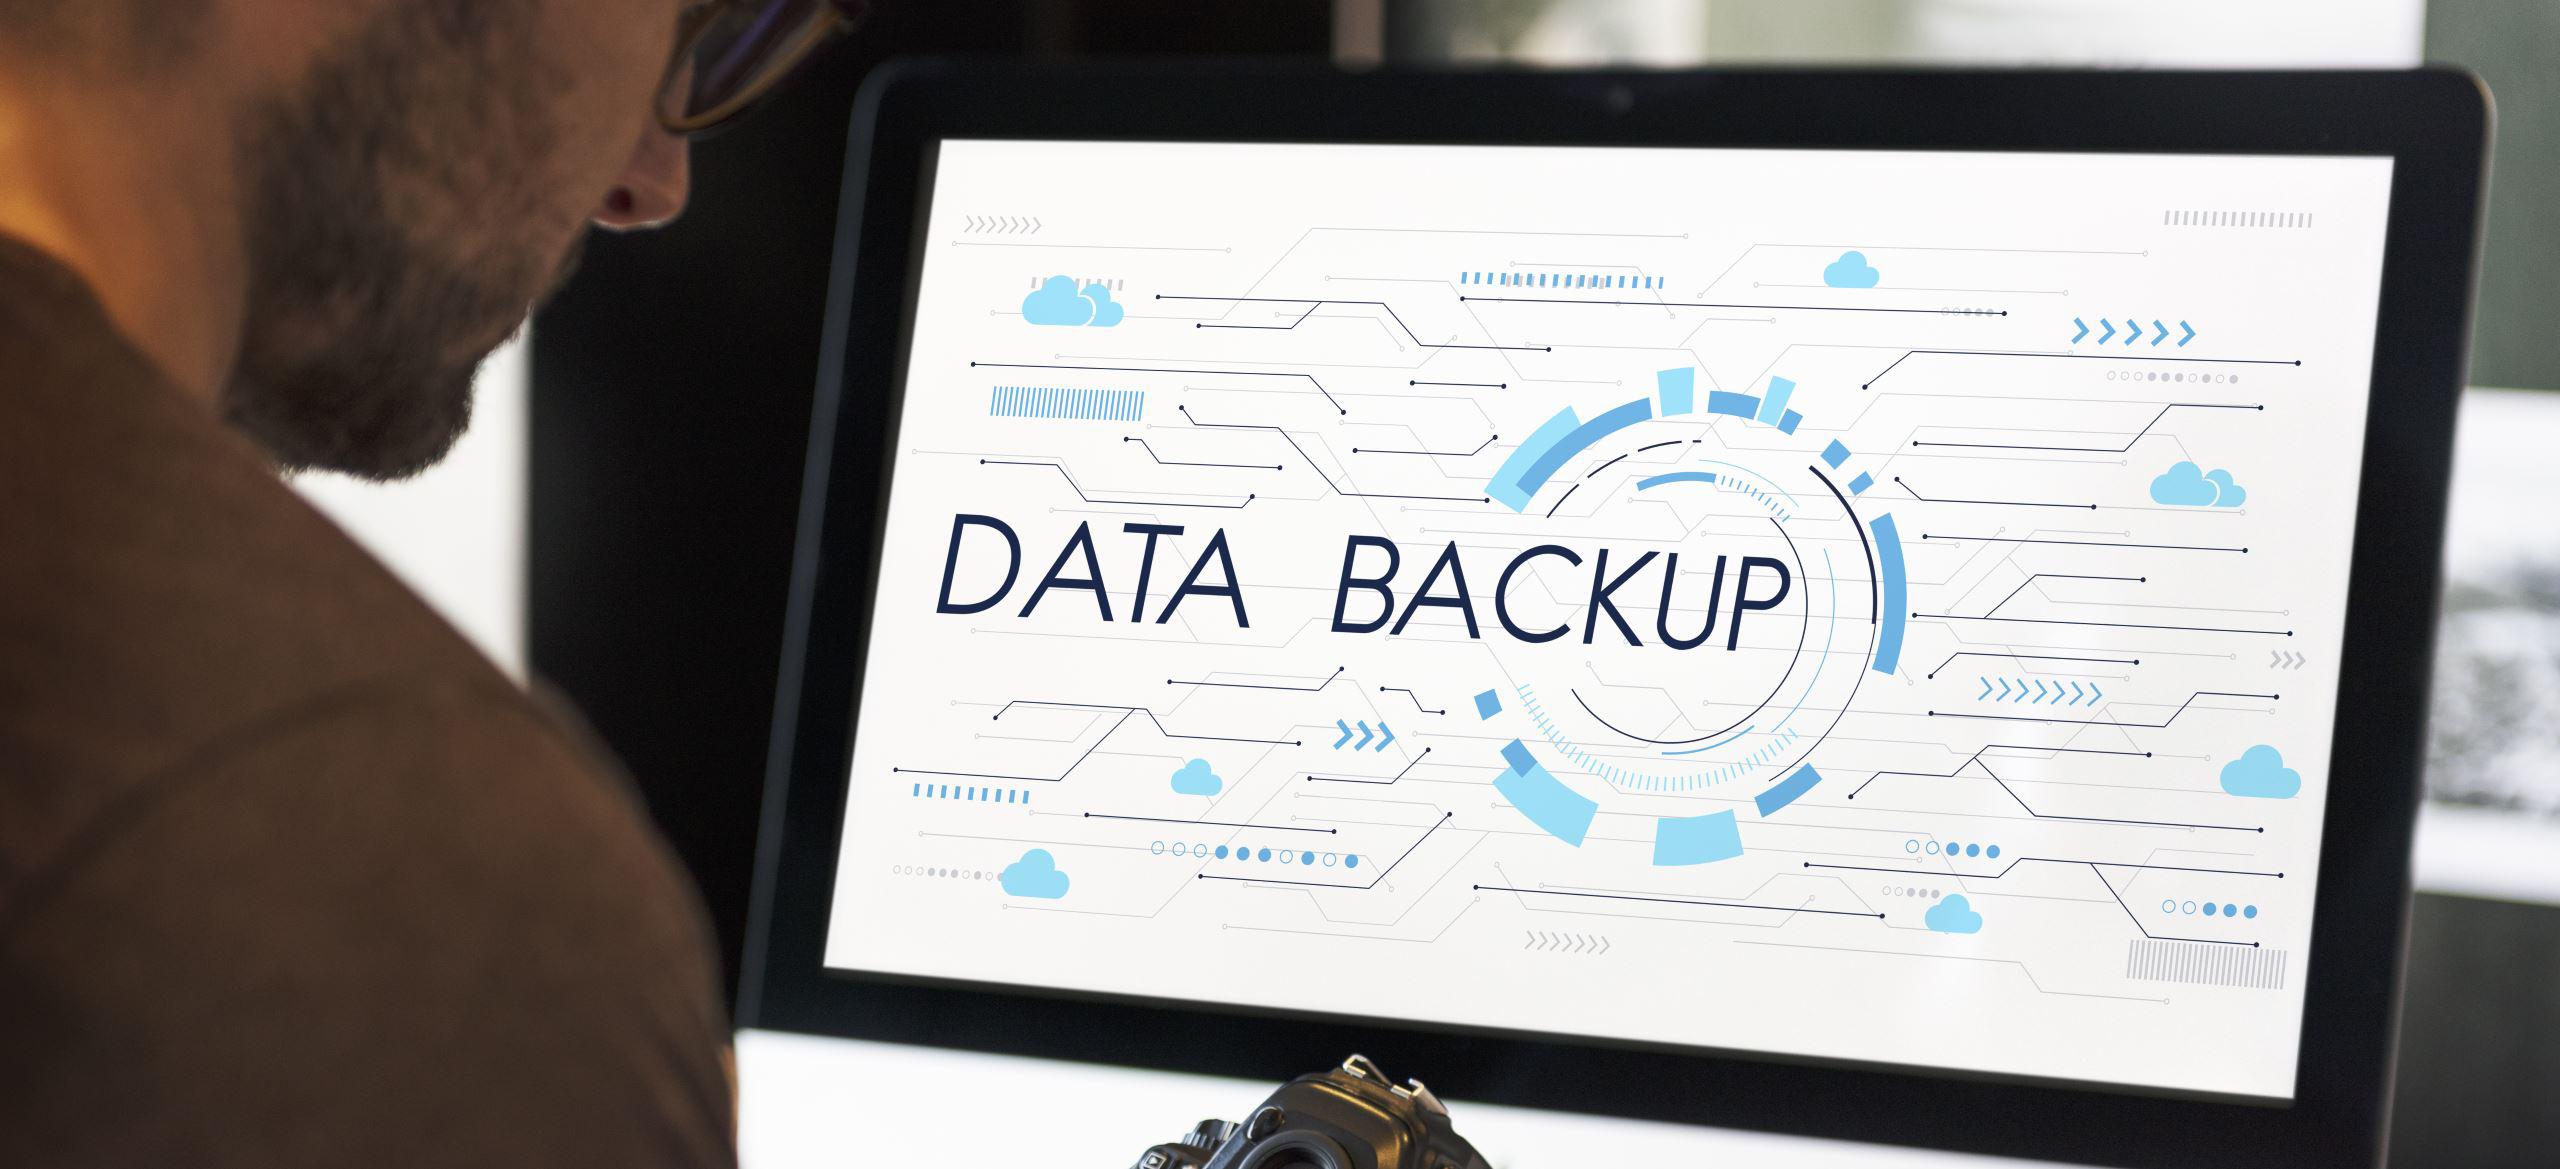 ibm data backup solution